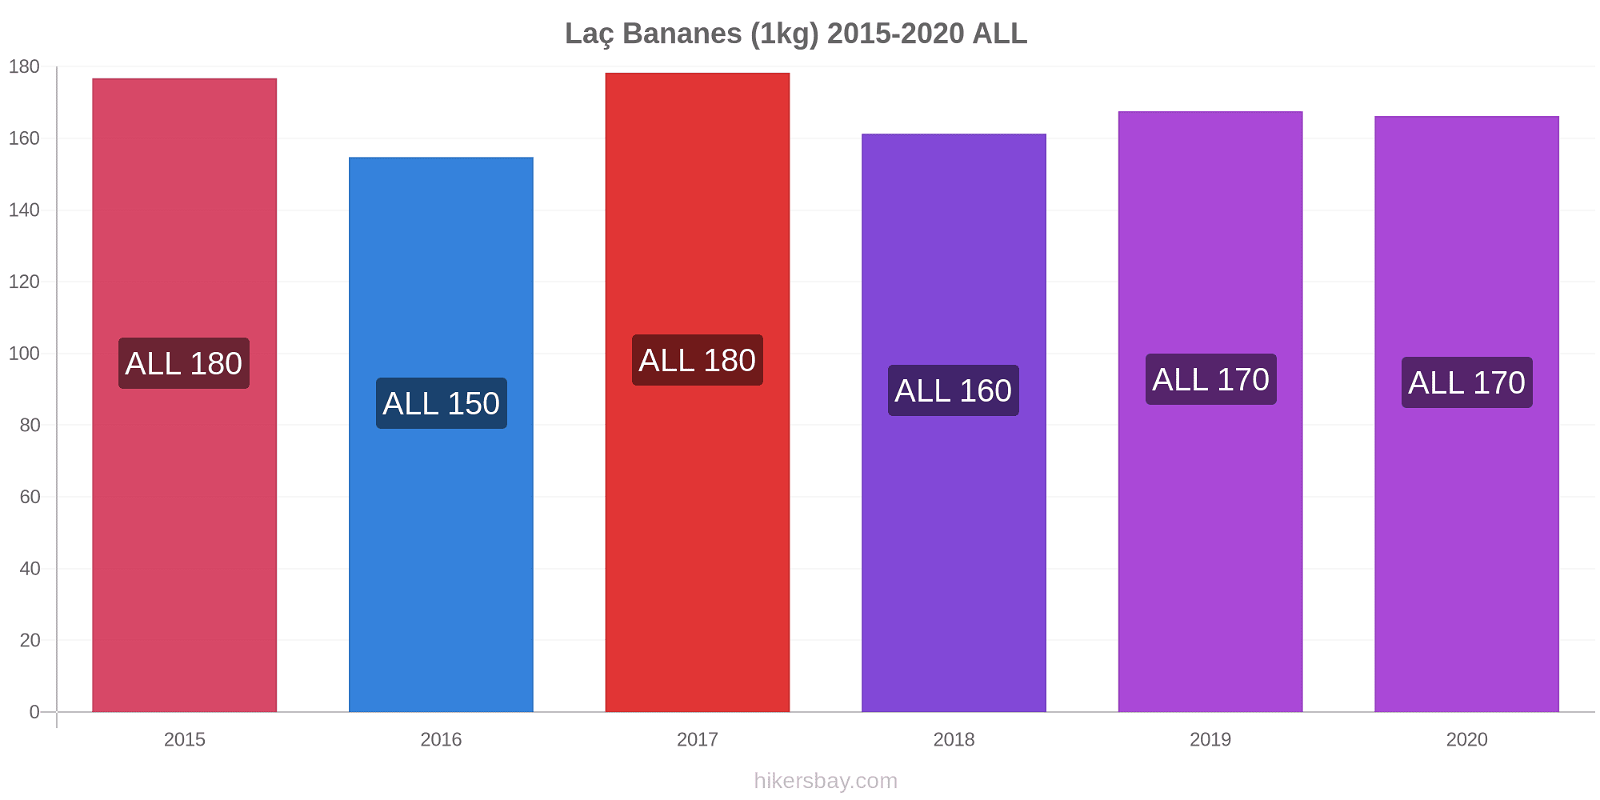 Laç changements de prix Bananes (1kg) hikersbay.com